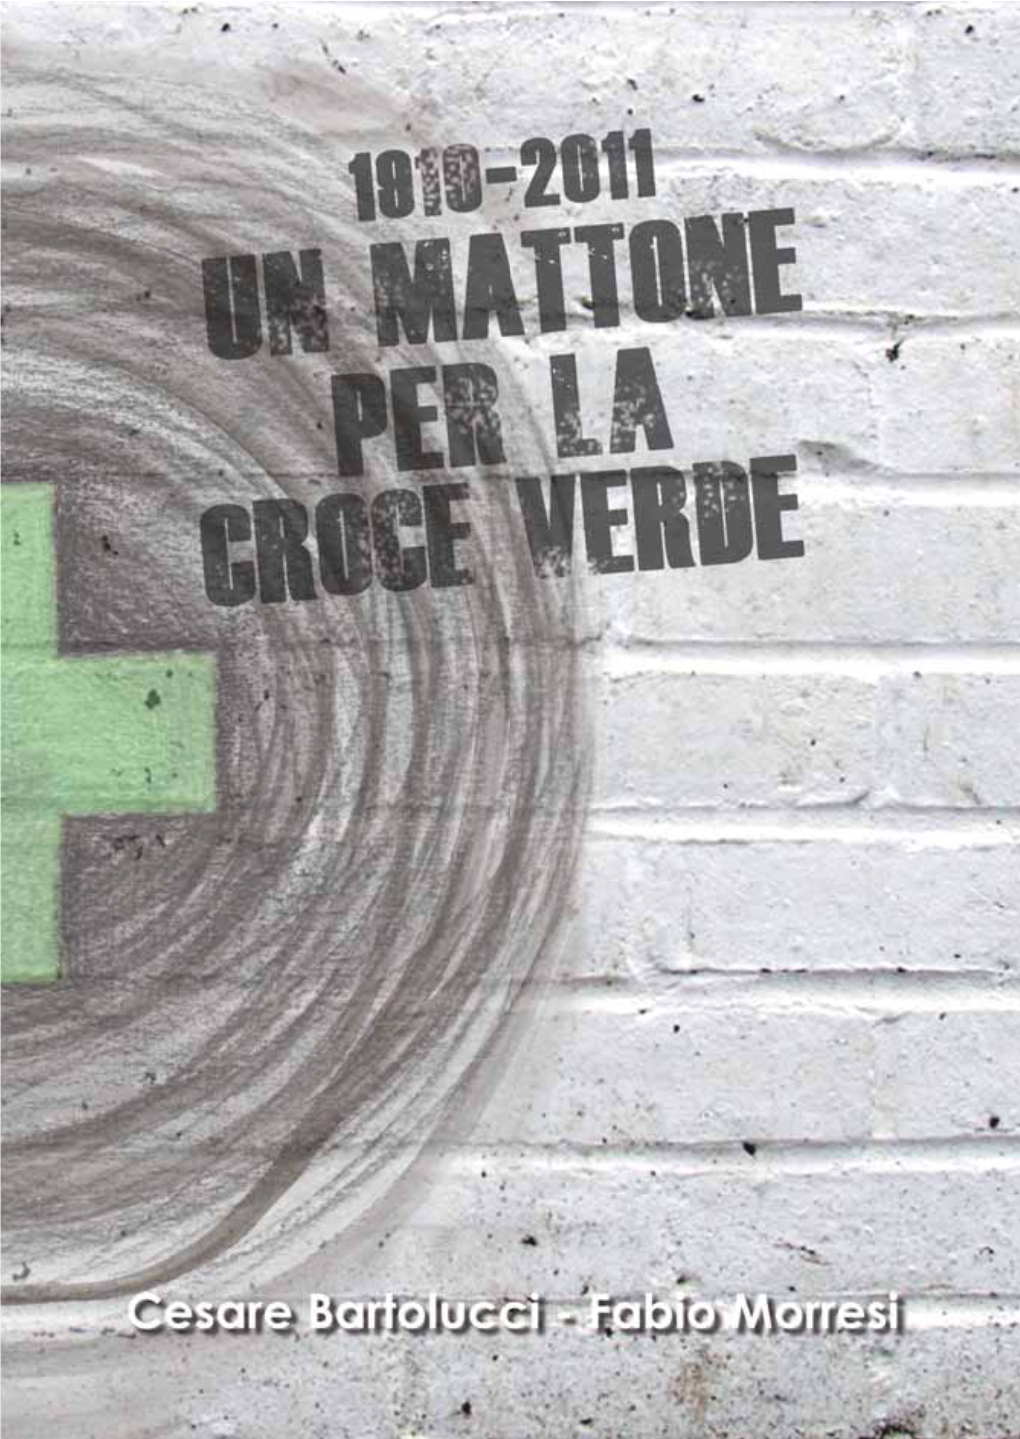 Un-Mattone-Per-La-Croce-Verde.Pdf